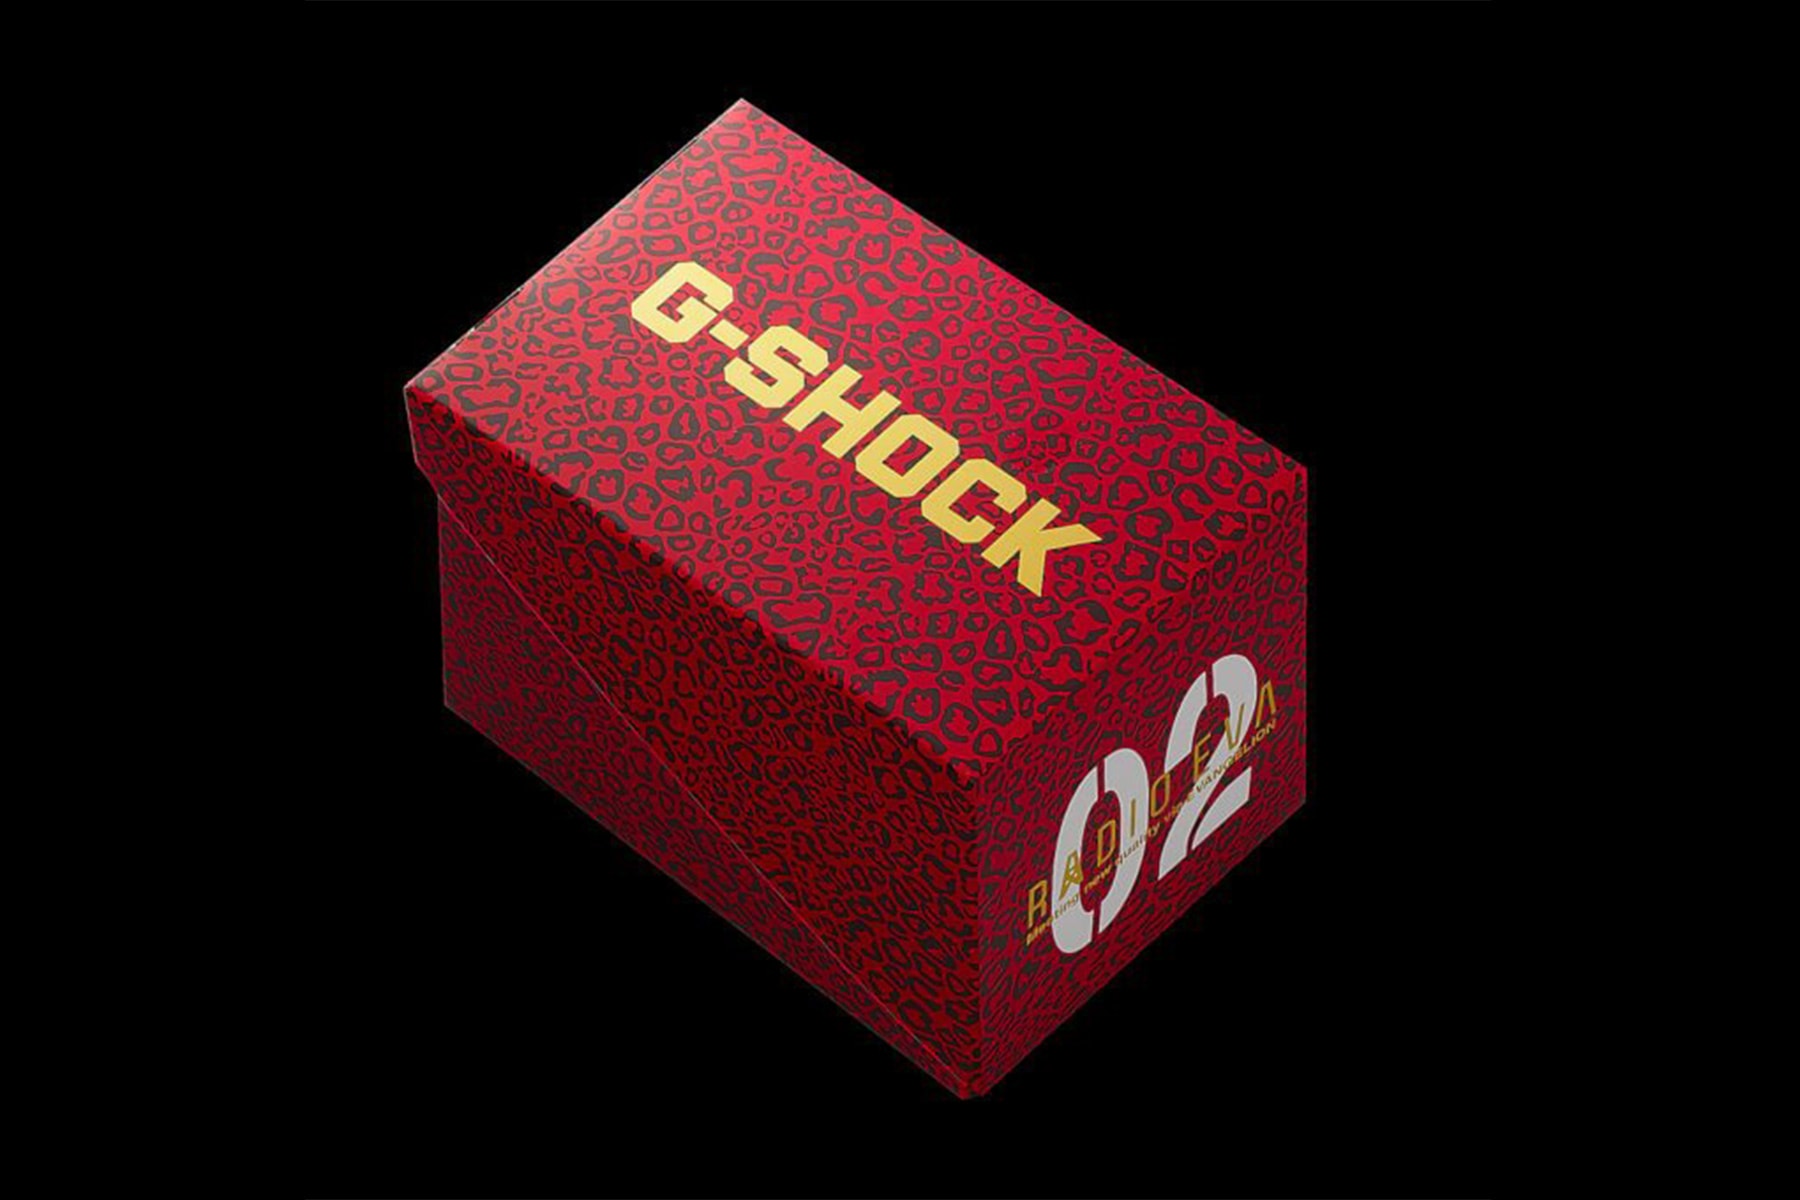 《新世紀福音戰士 Evangelion》x G-Shock 第二彈聯乘 DW-5600 錶款登場